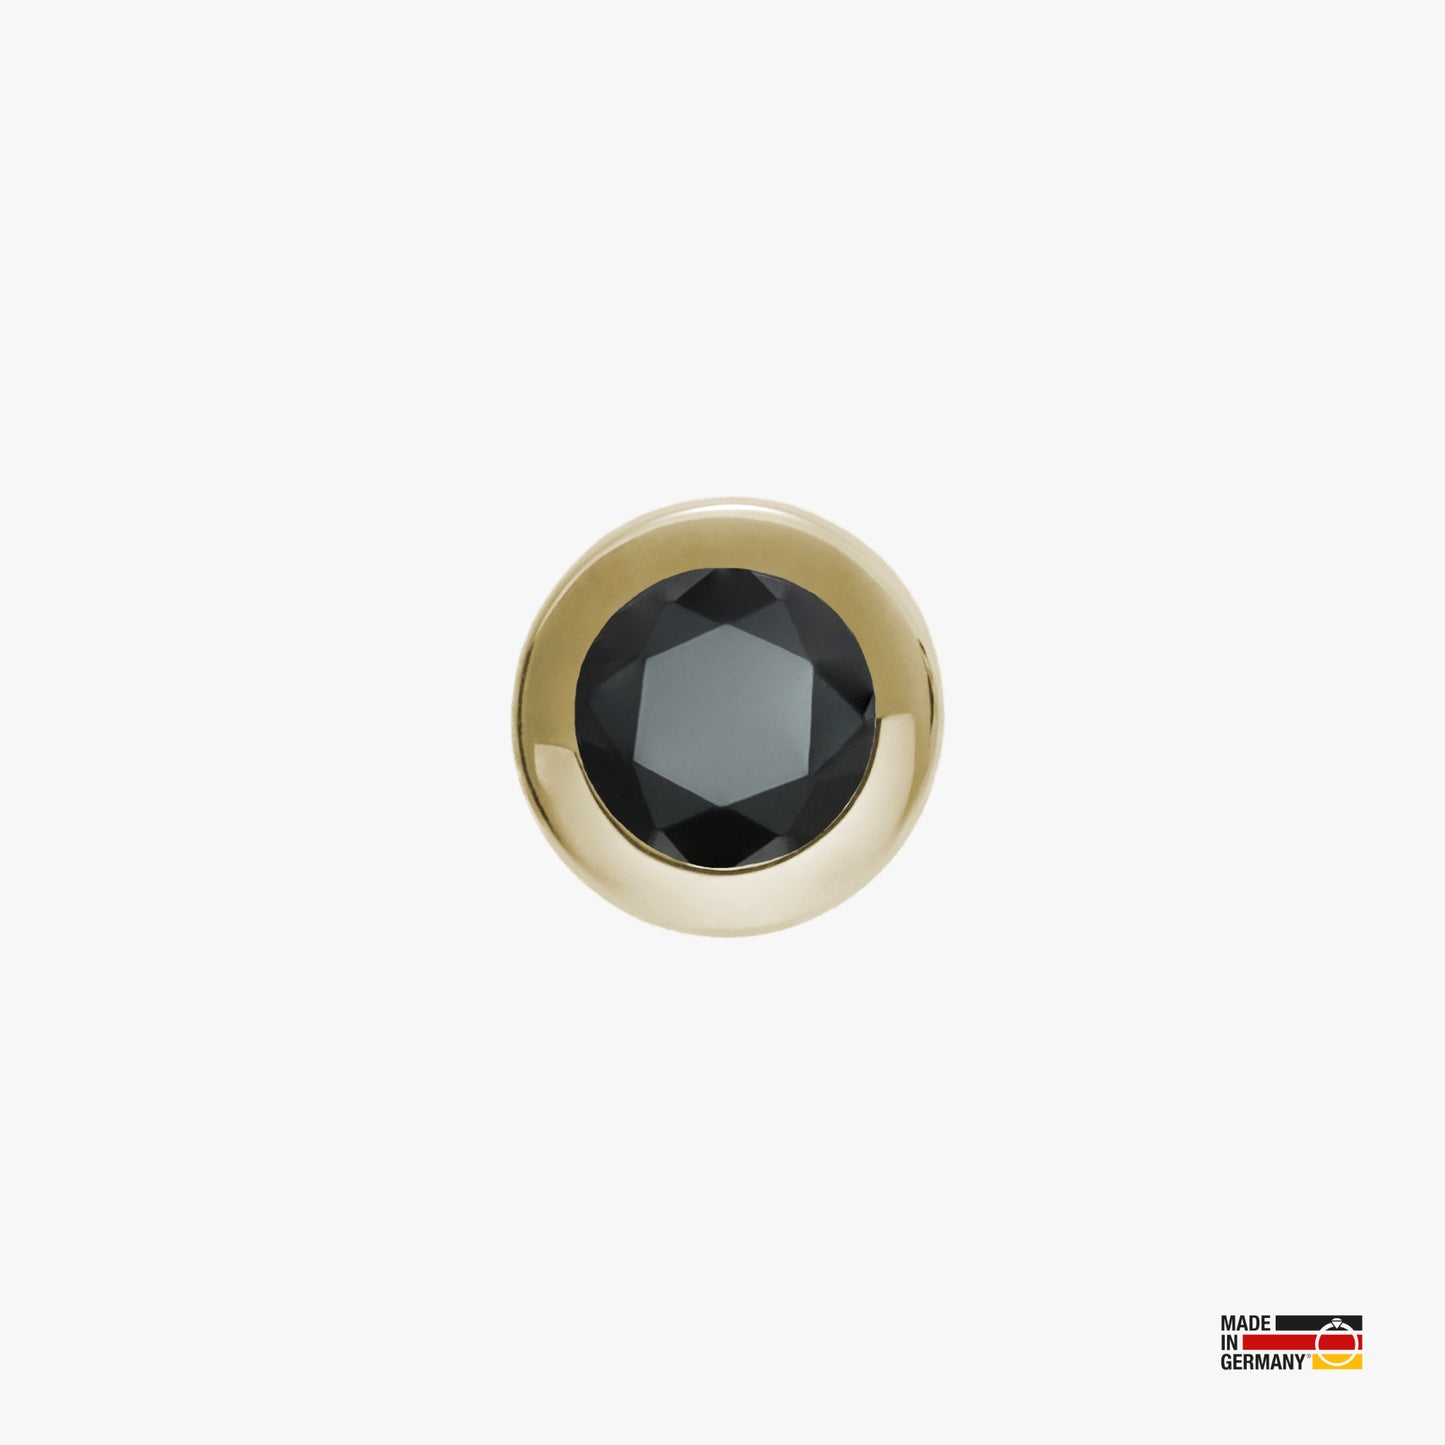 Pamoro® Charm für Apple Watch Sportarmbänder - Schmuck in Silber 24k Gold plattiert mit Cubic Zirkonia in schwarz - Schraubmechanik